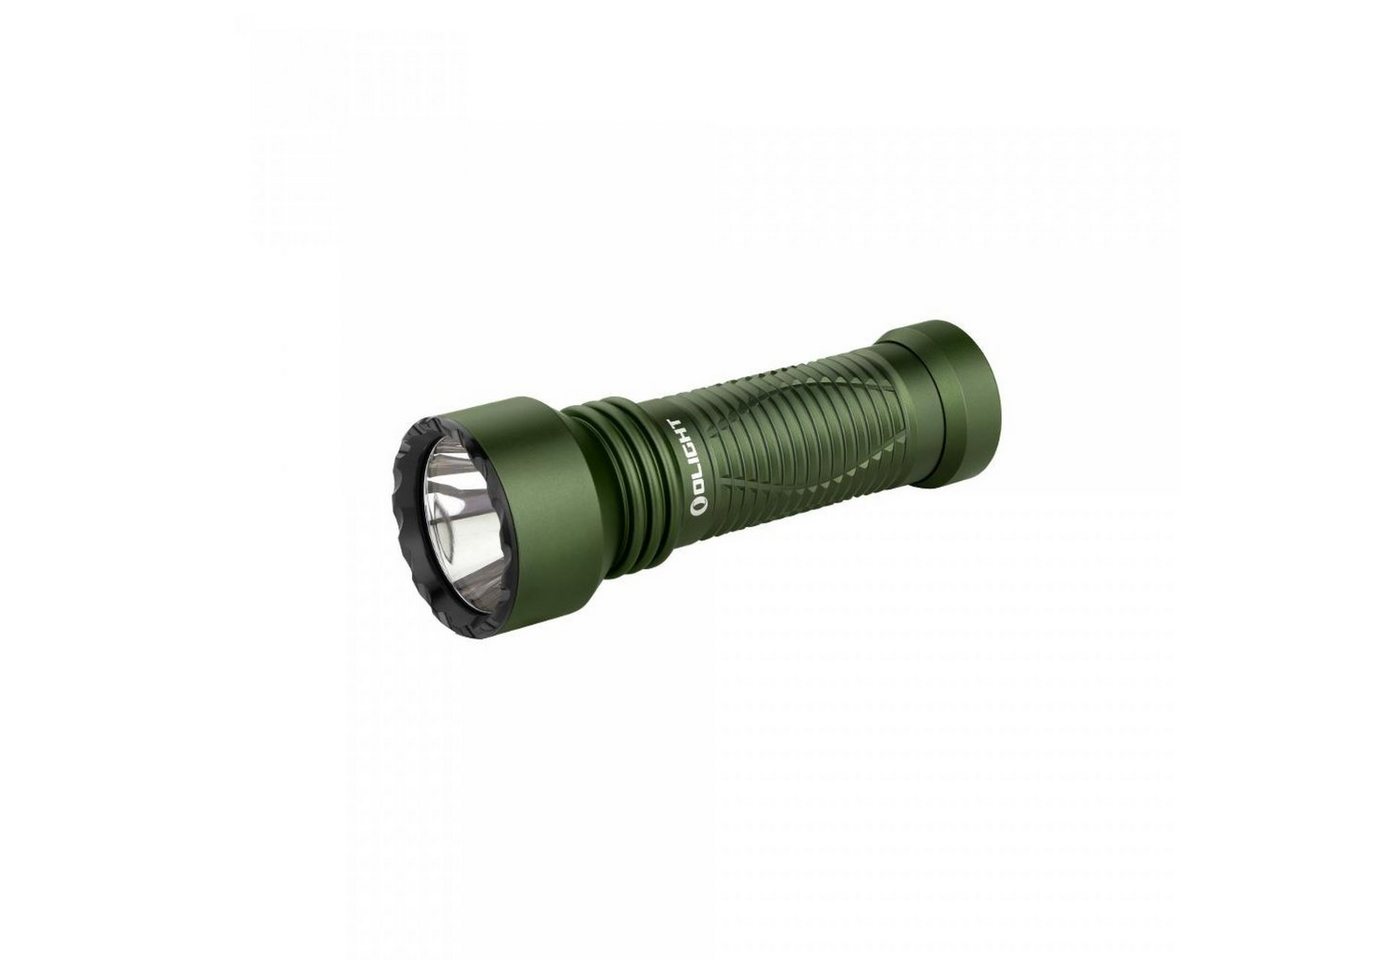 OLIGHT LED Taschenlampe Javelot Mini LED taktische Taschenlampe mit einer runden Lichtquelle, wiederaufbare IPX8 zoombare Handlampe für Notfall, Patrouille, Camping von OLIGHT